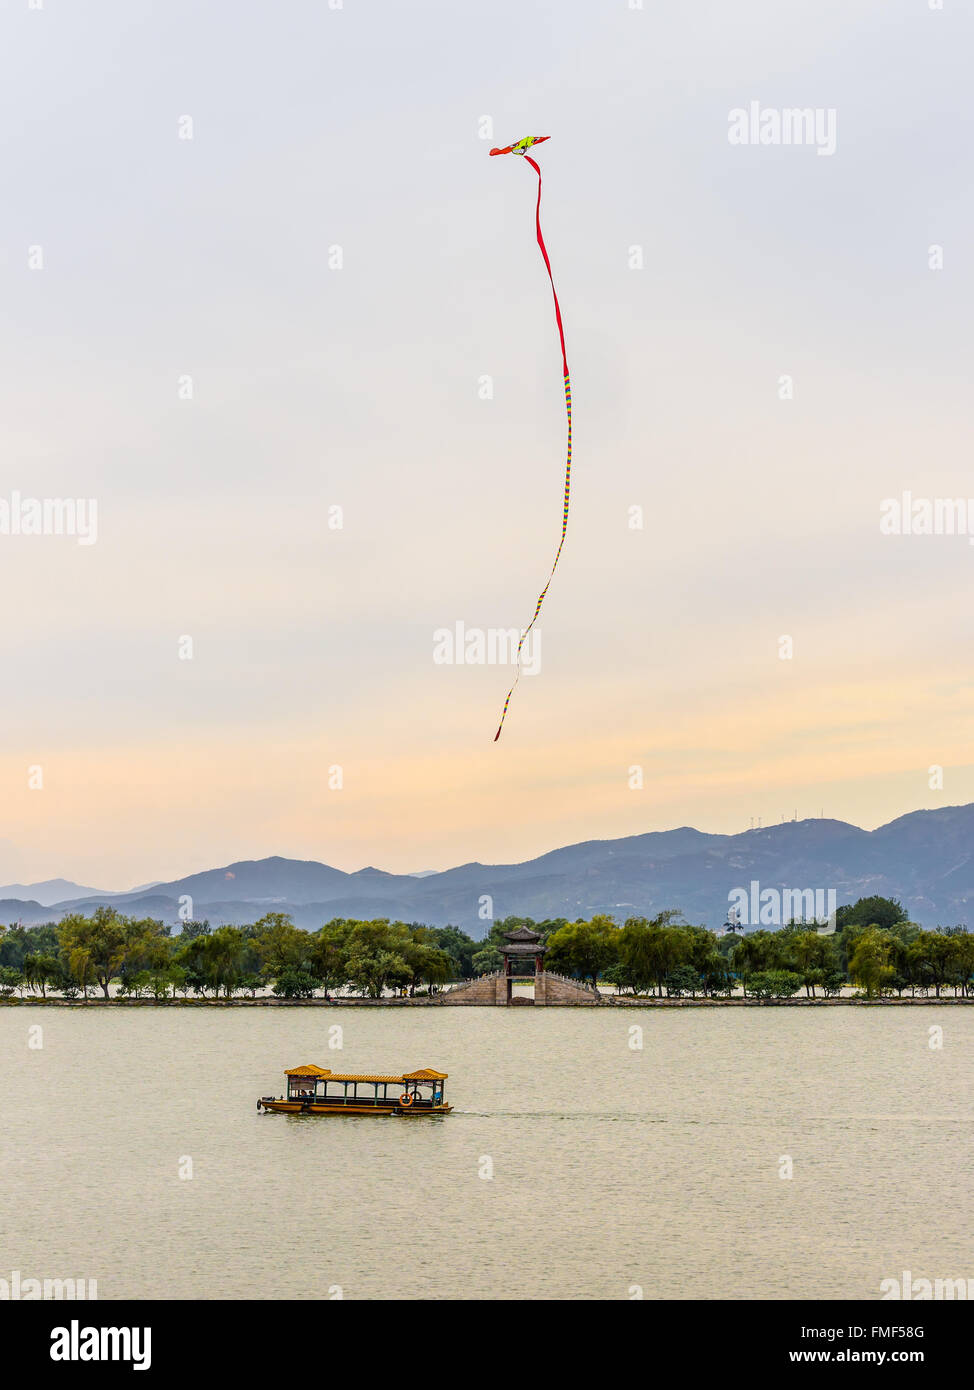 Cerf-volant dans le ciel au lac Kunming au Palais d'été. Le kitesurf est une très vieille Chine Banque D'Images